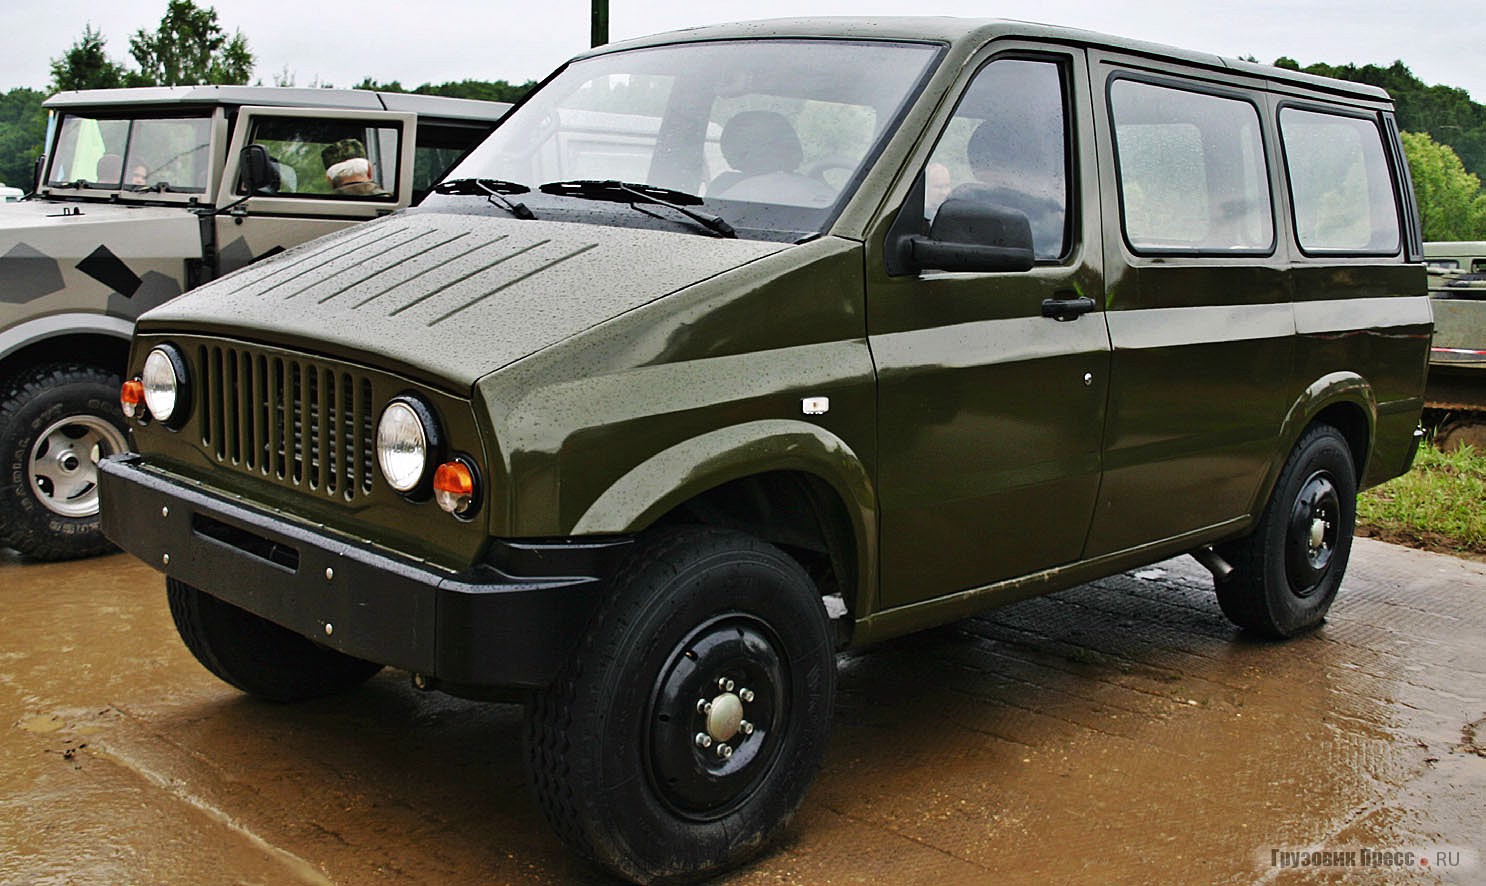 Макет УАЗ-2970 с дизель-электрической  моторно-трансмиссионной установкой